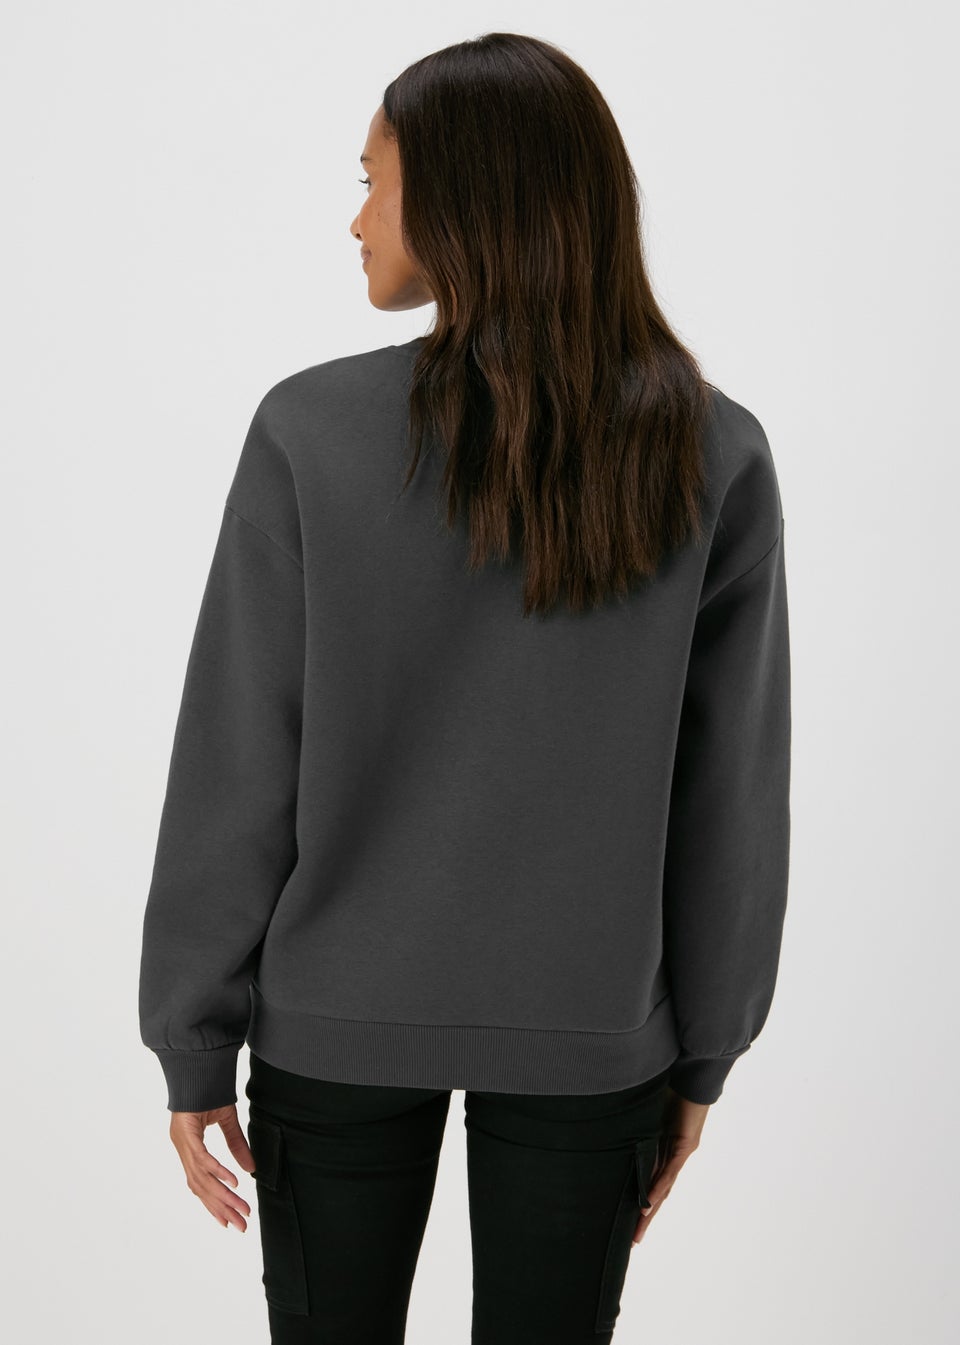 Charcoal Sequin Graphic Sweatshirt